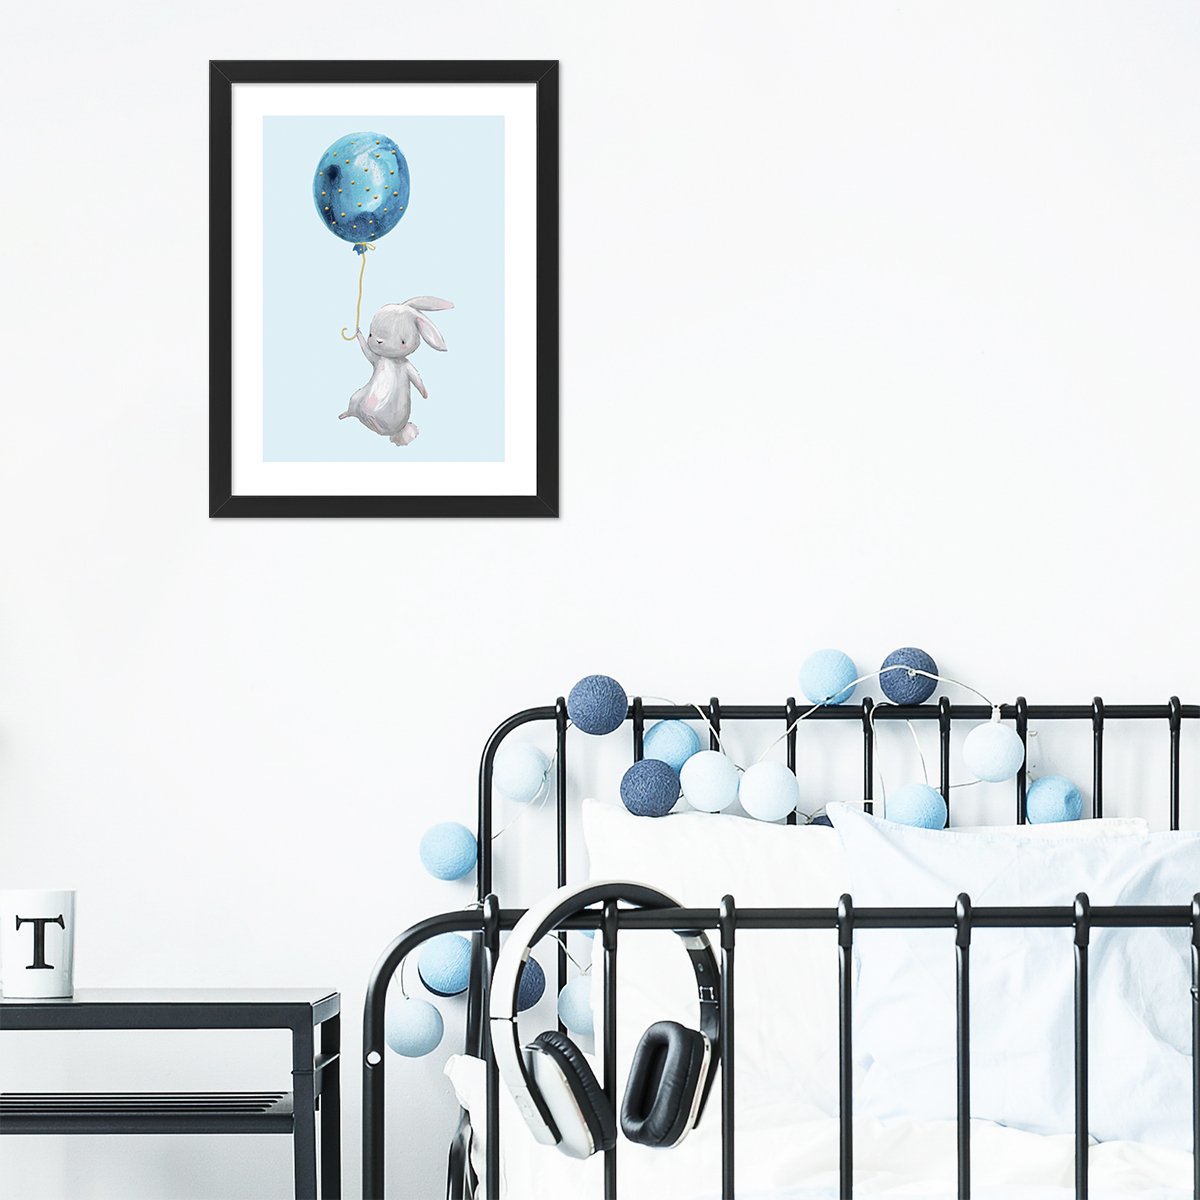 Plakat do pokoju dziecięcego z królikiem trzymający w ręce balon ze sznurkiem oprawiony w czarna ramkę zawieszony nad dziecięcym łóżkiem#kolor_niebieski